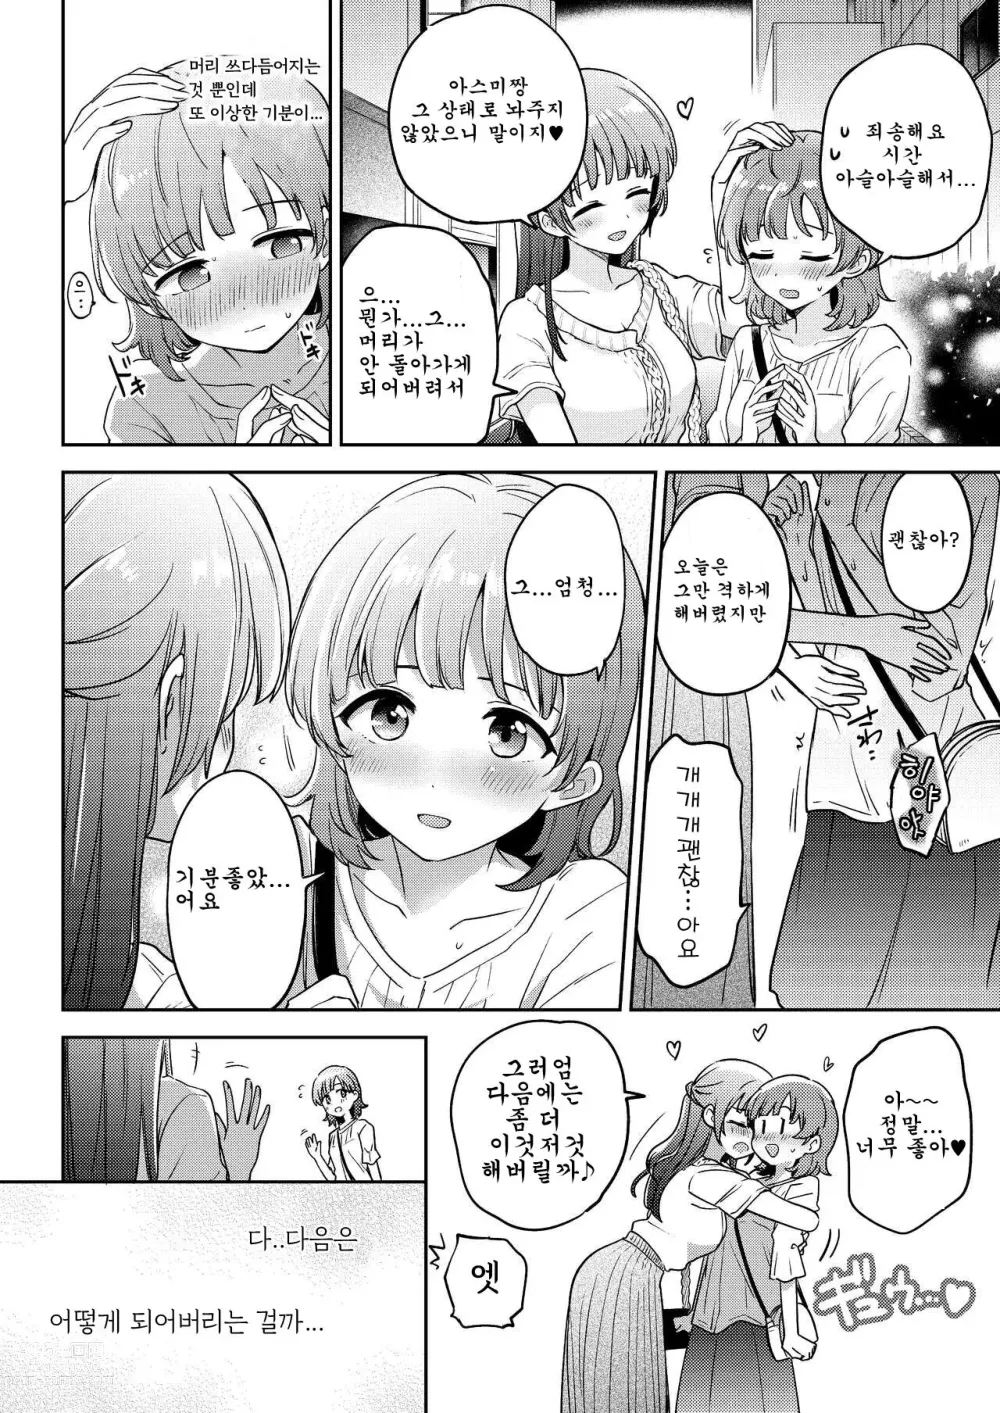 Page 18 of doujinshi 아스미짱은 레즈 풍속에 흥미가 있습니다!